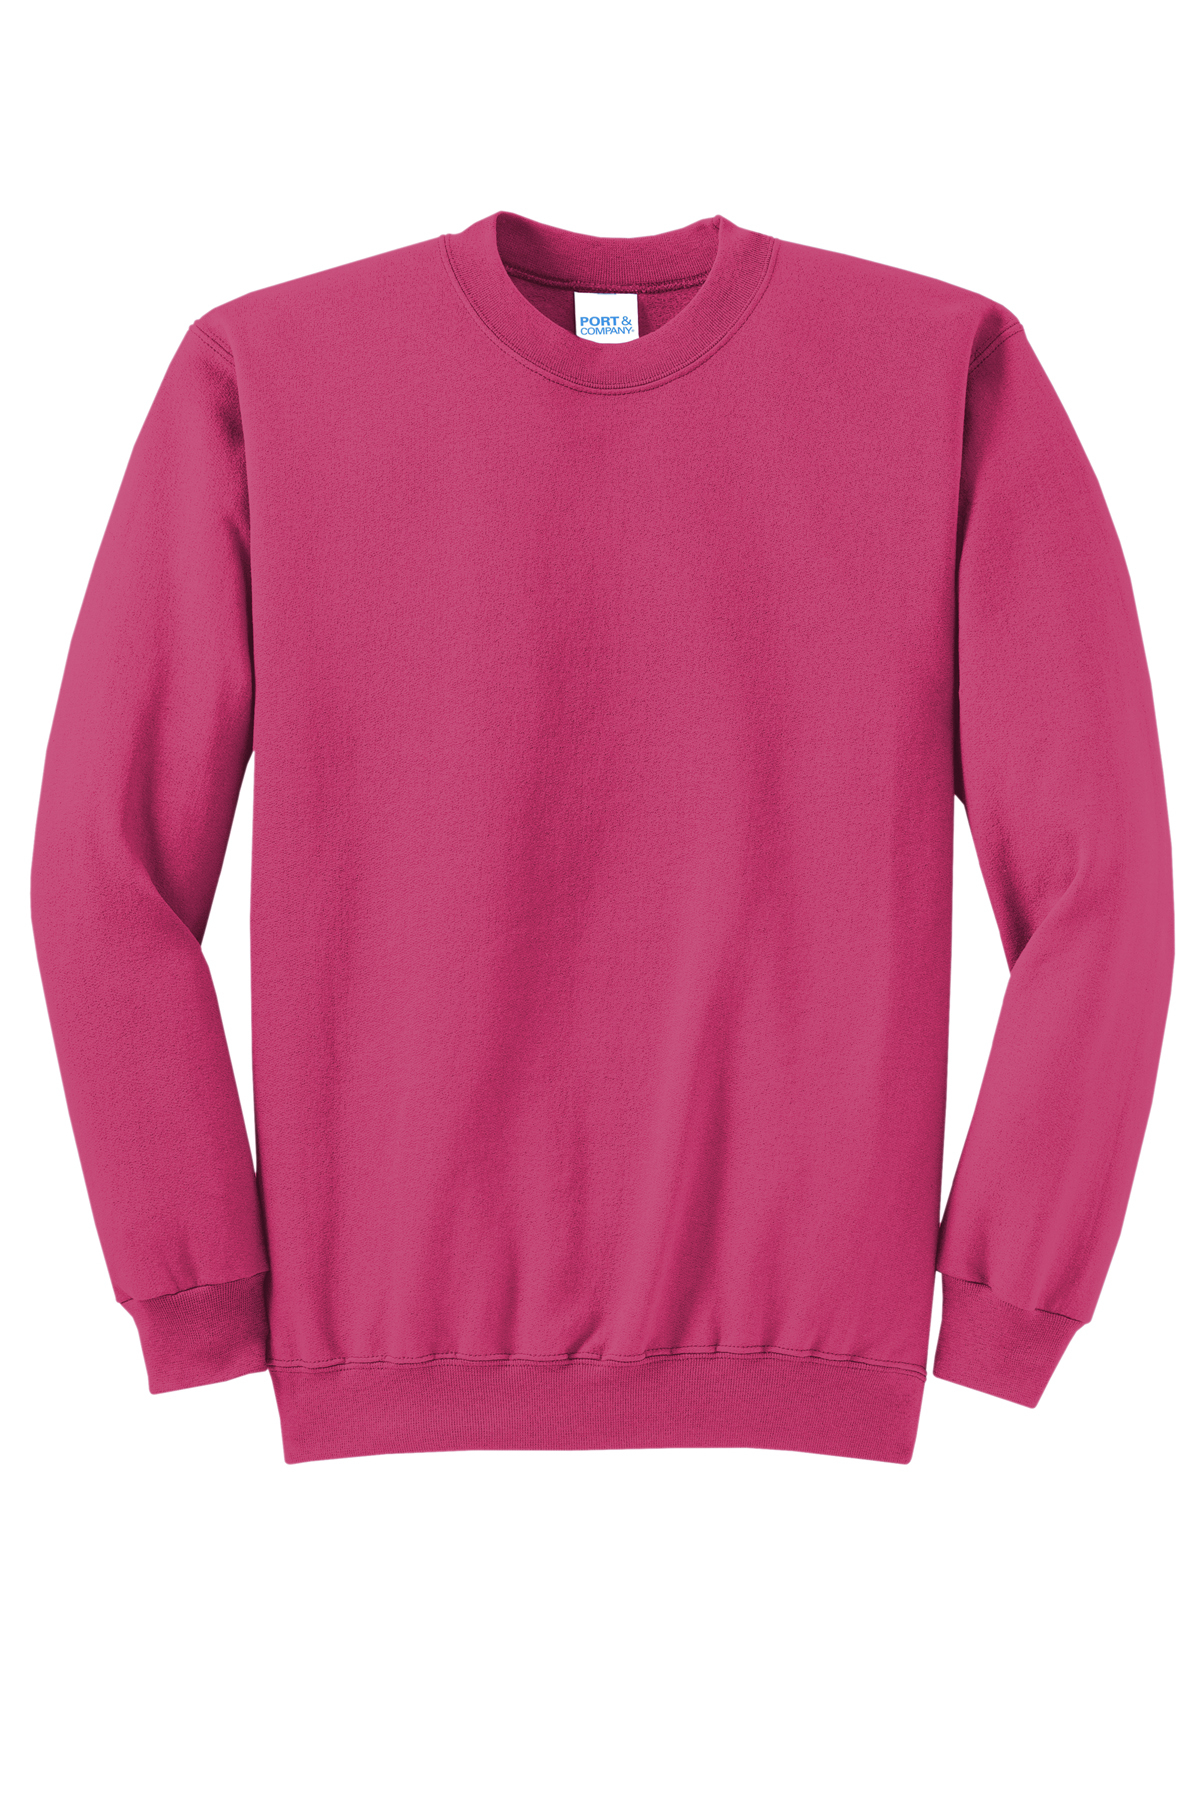 Port & Company Core Fleece Crewneck Sweatshirt, Product